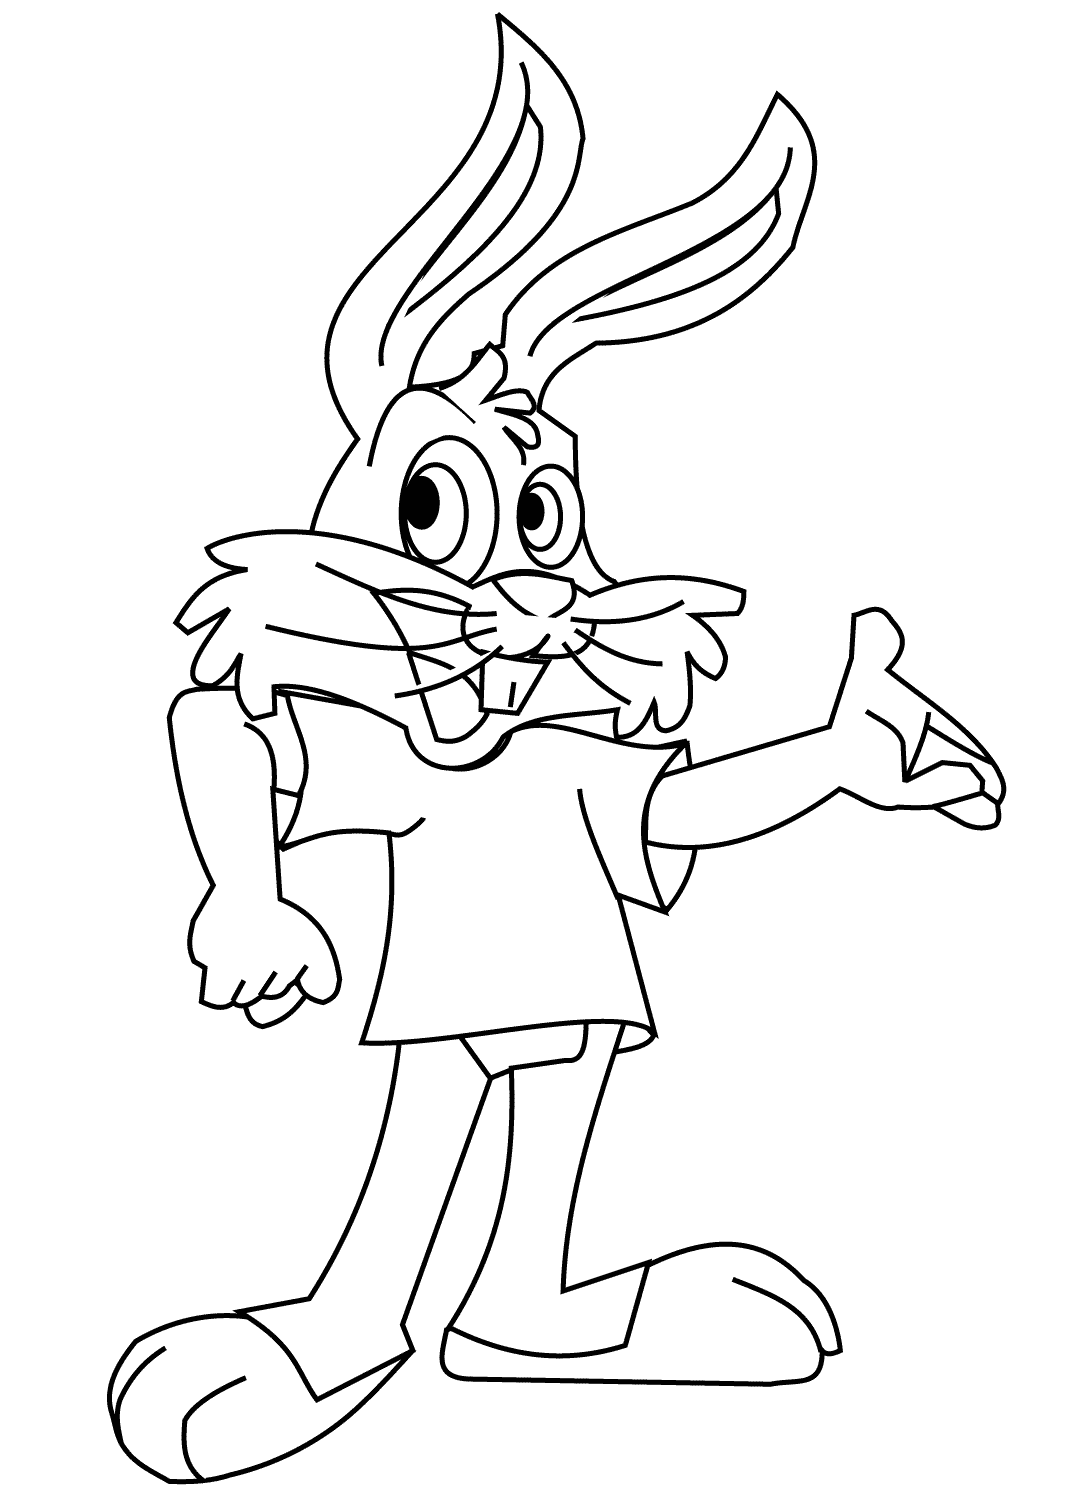 Conejo de divertidos dibujos animados lleva una camiseta de Bunny